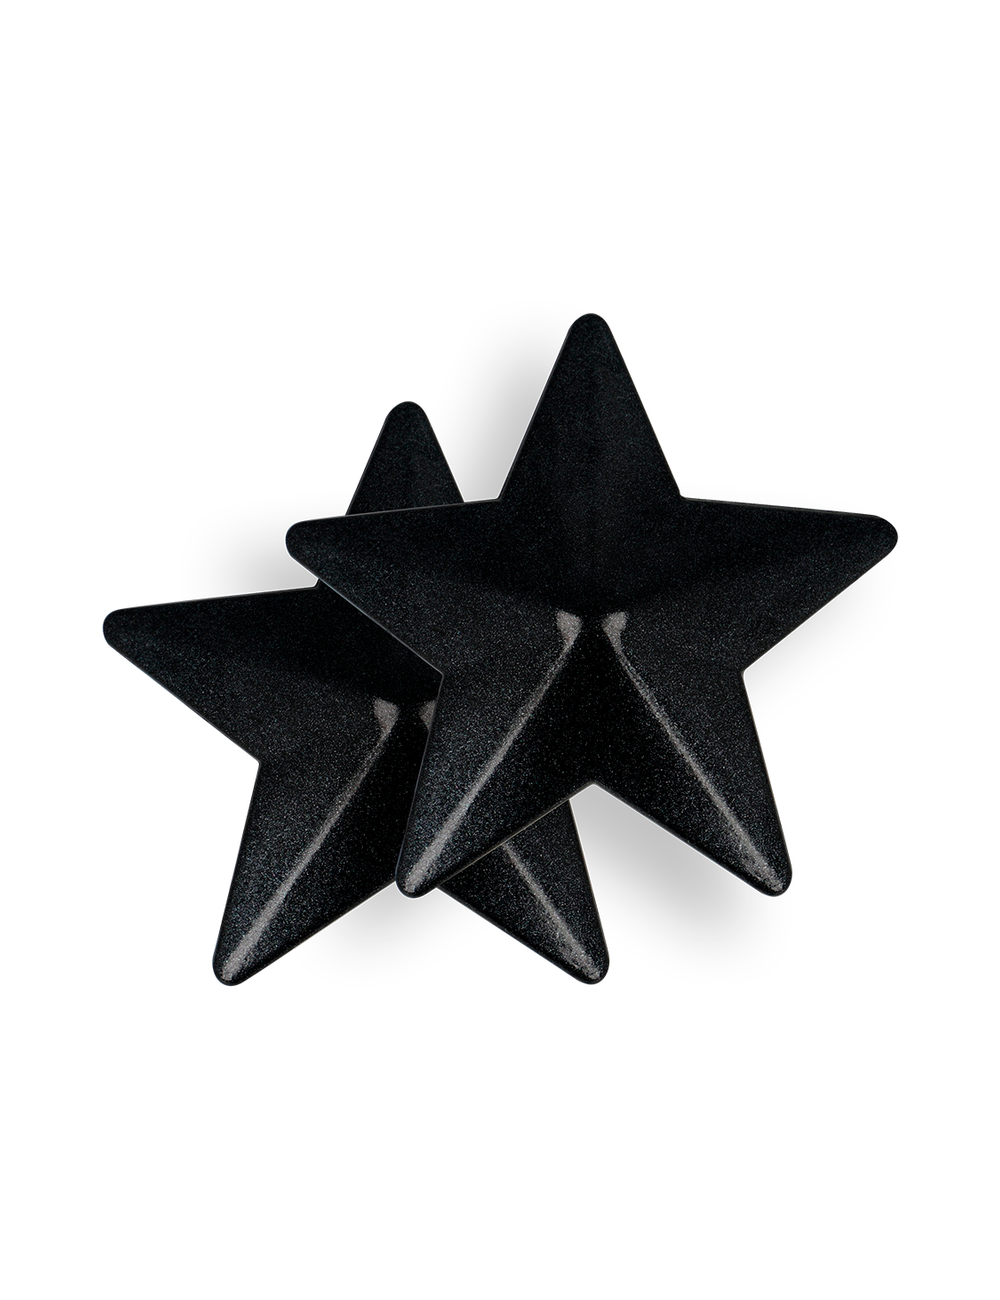 COQUETTE CHIC DESIRE NIPPLE COVERS - BLACK STARS